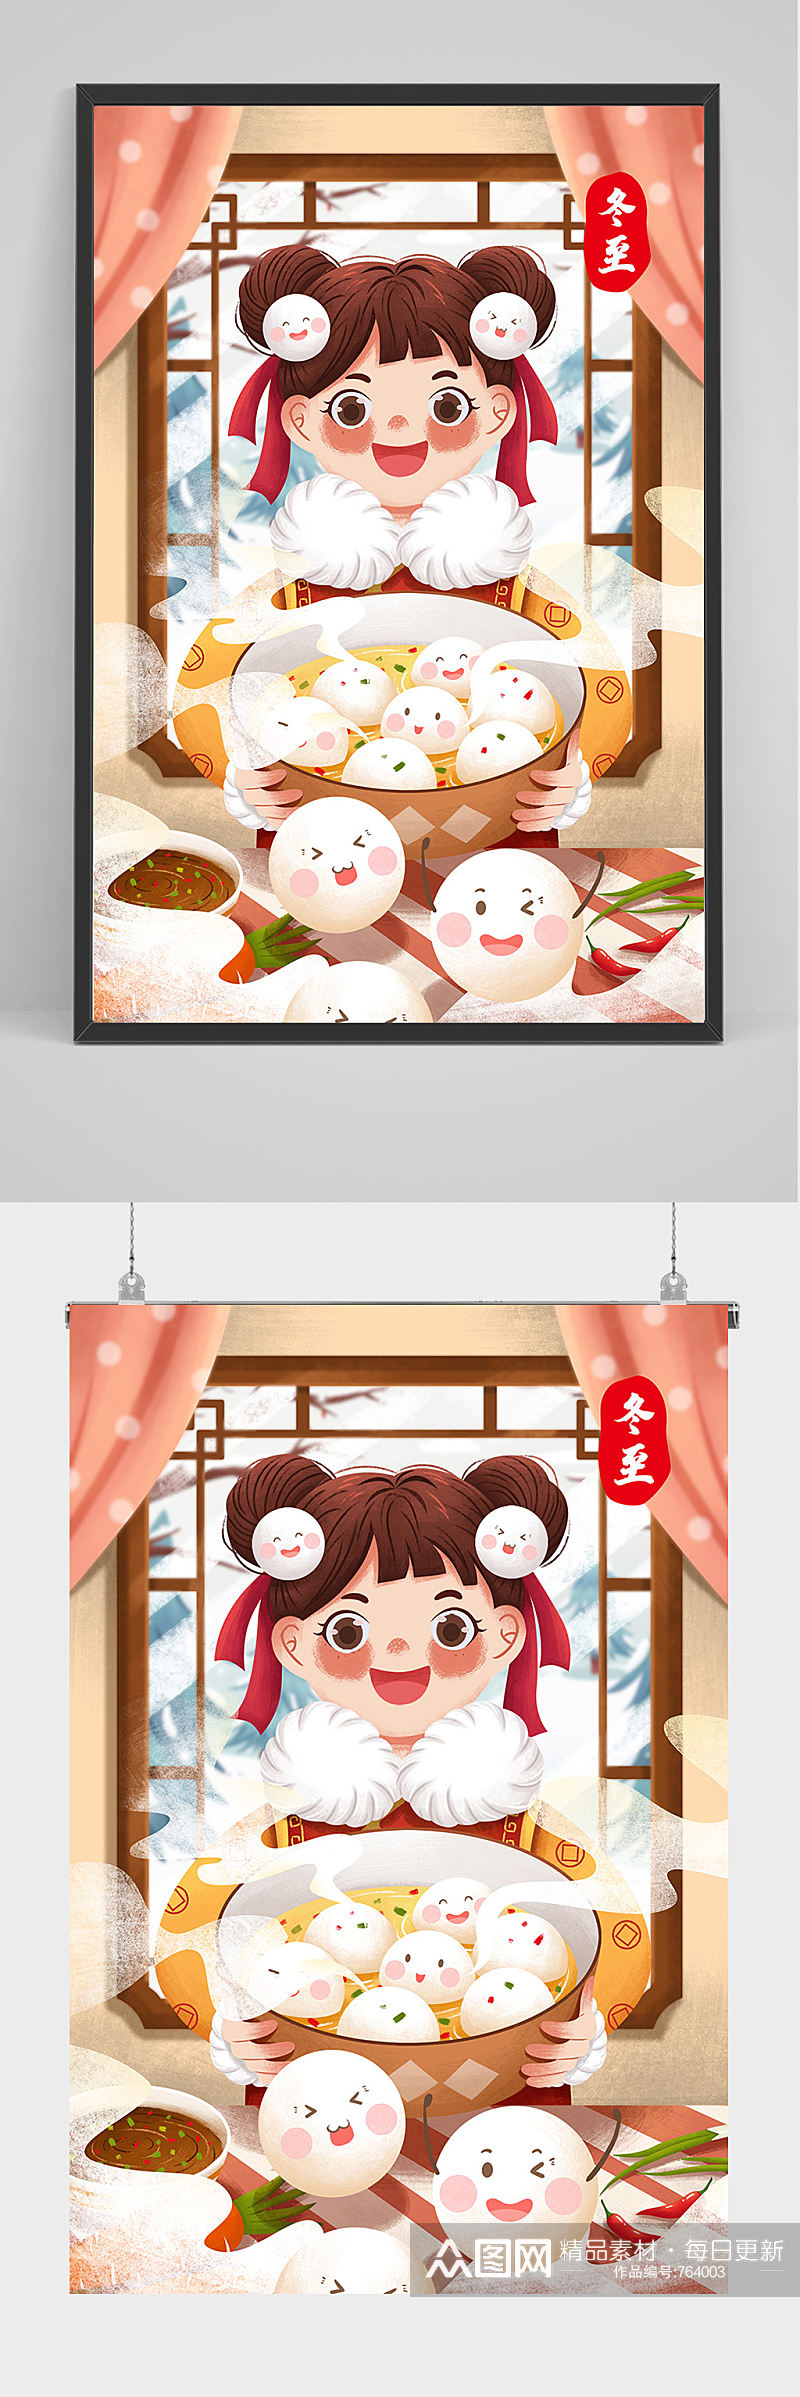 手绘冬至女孩吃饺子插画设计素材